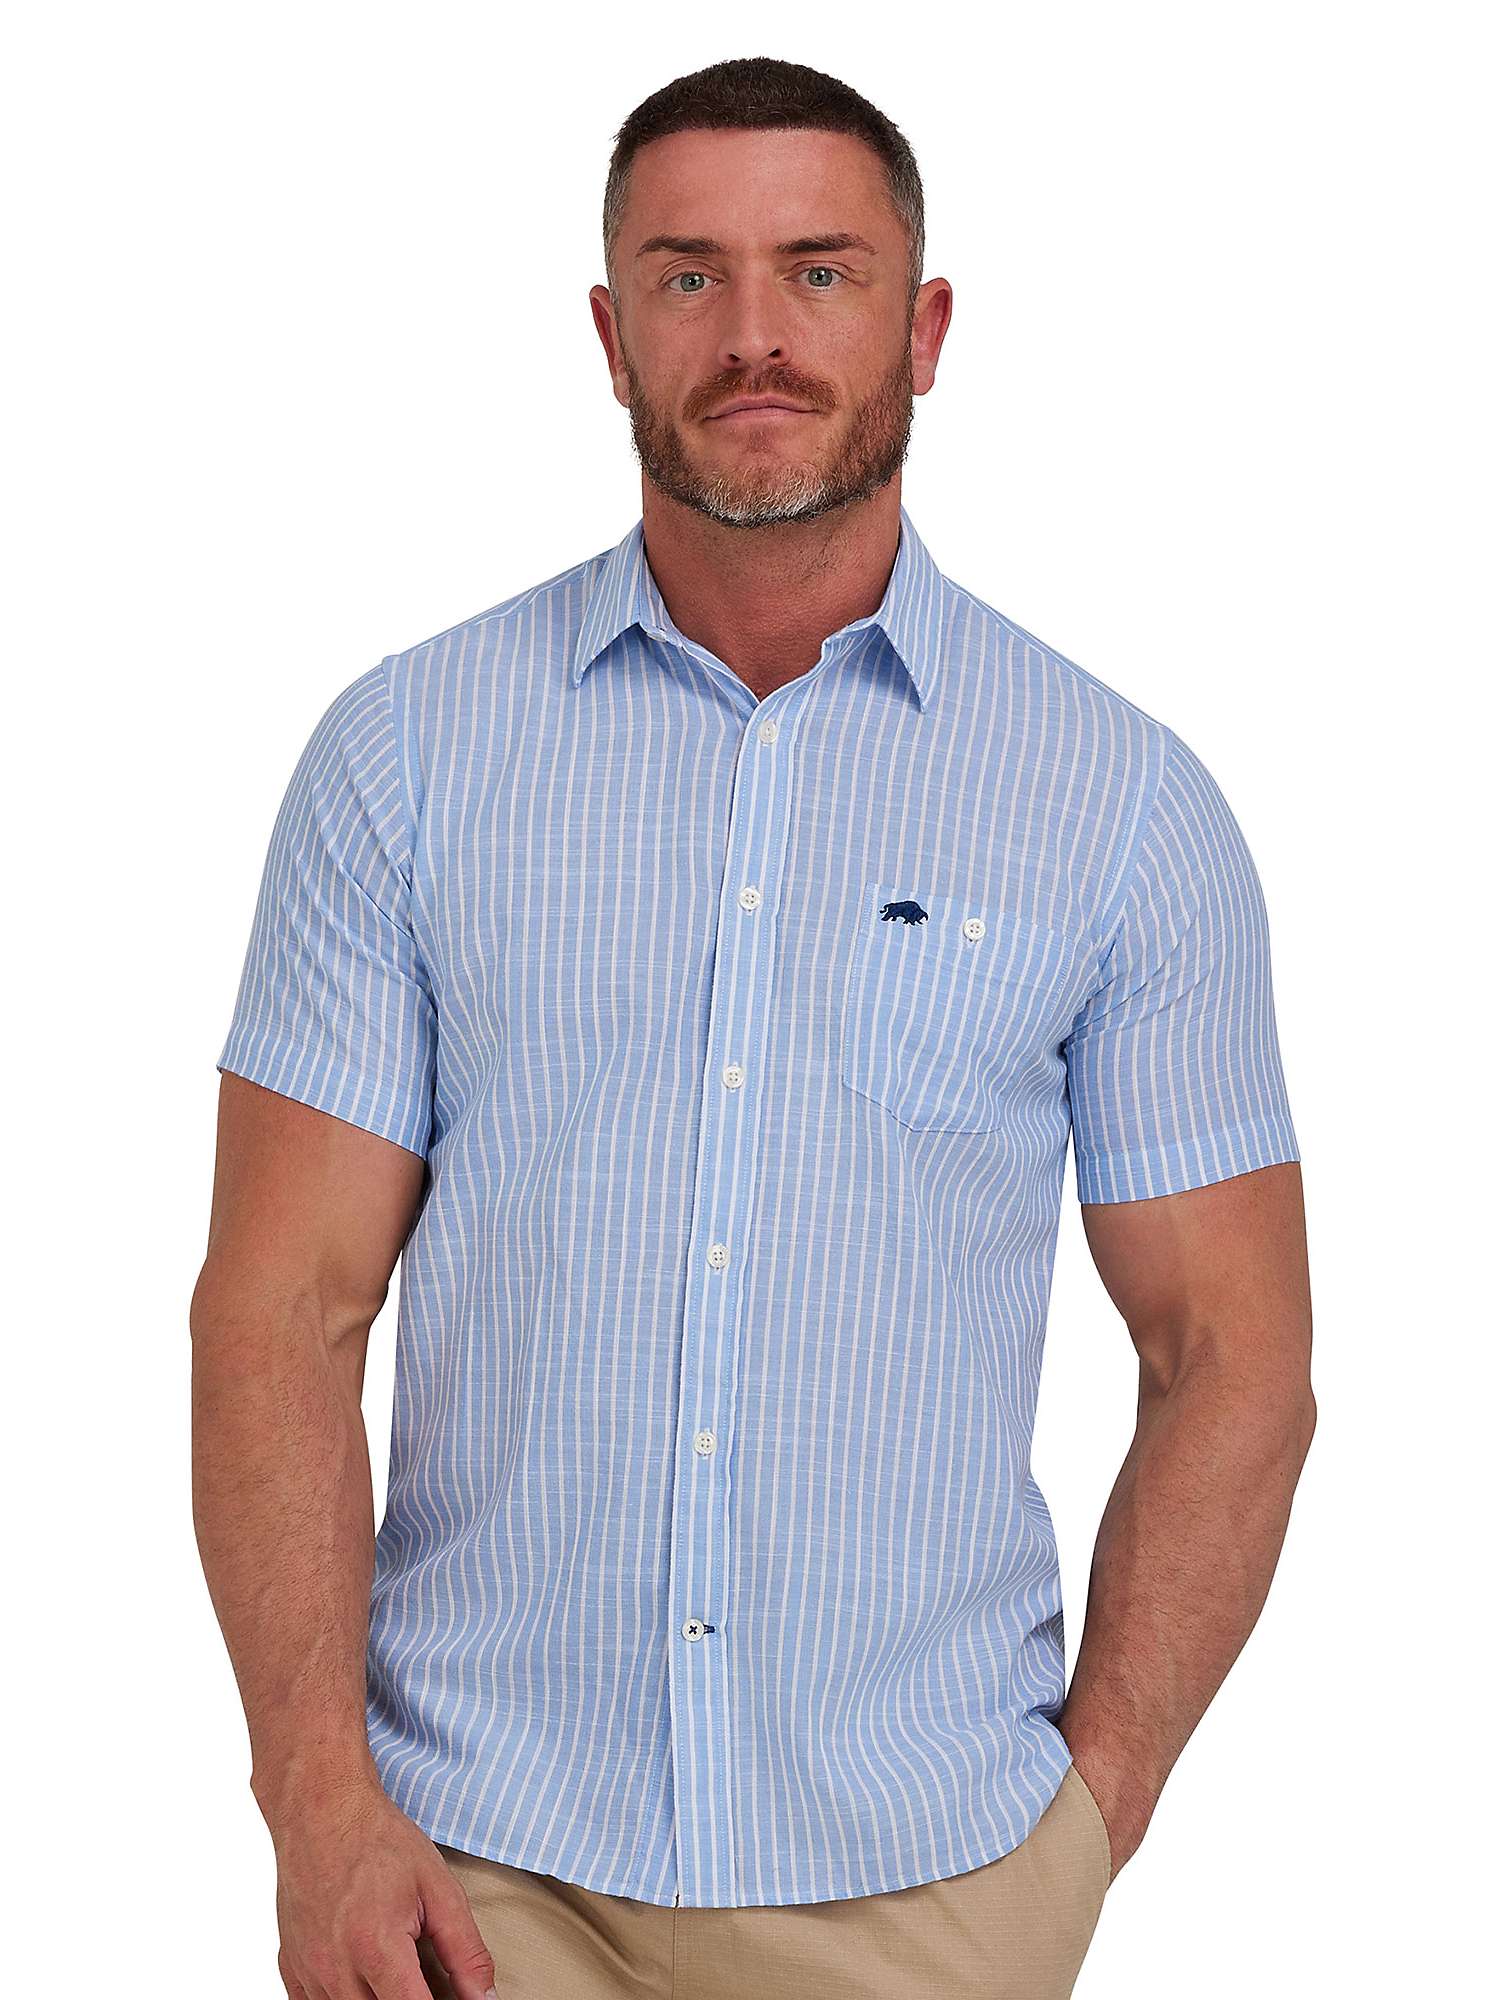 Buy Raging Bull Fine Stripe Linen Look Short Sleeve Shirt, Sky Blue Online at johnlewis.com